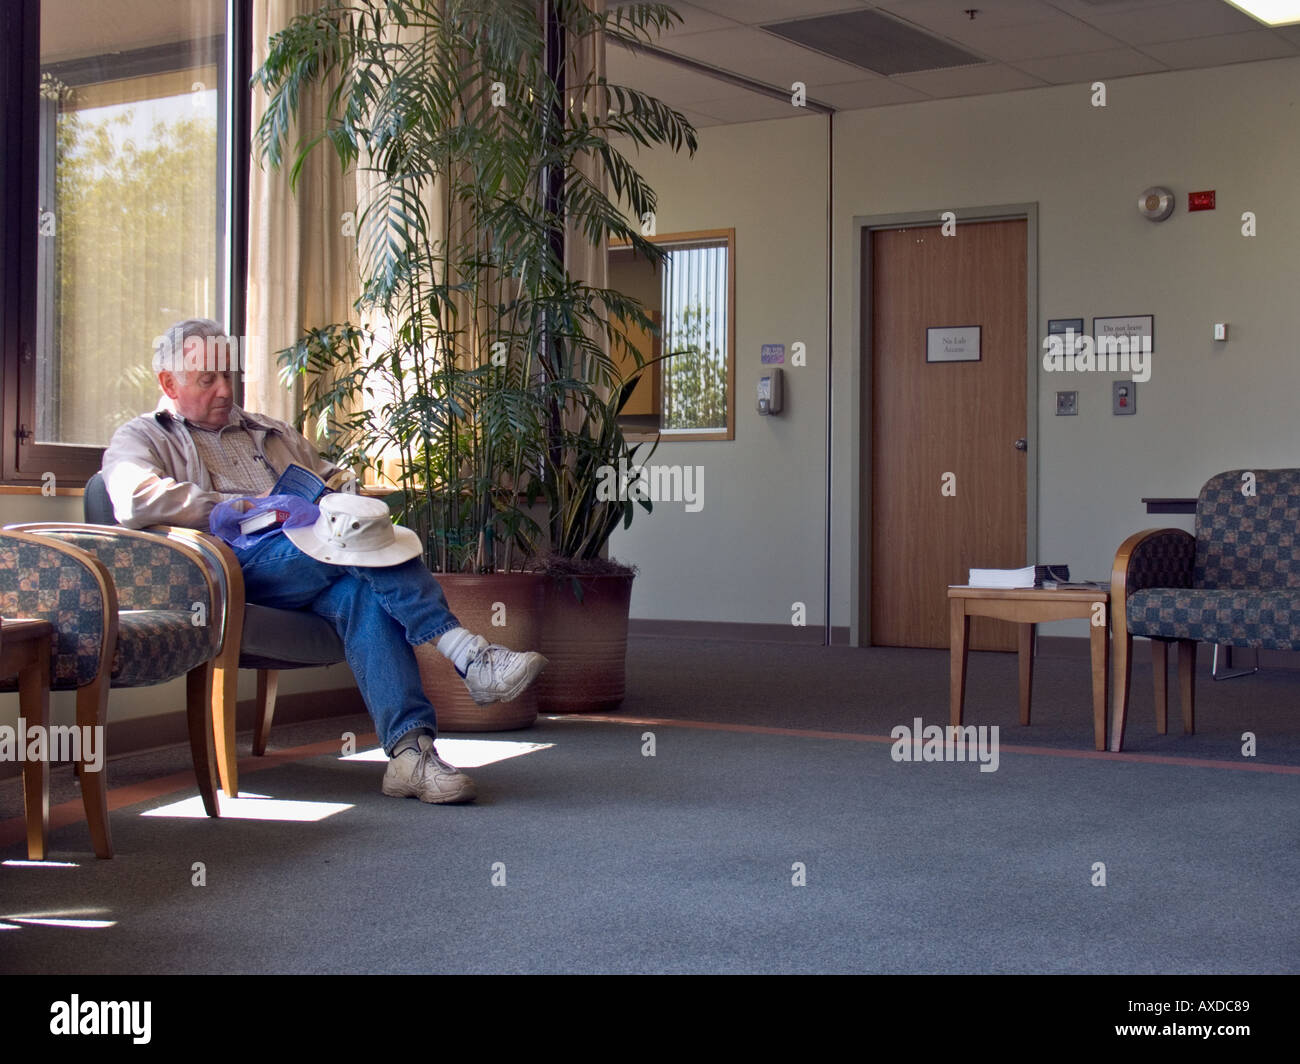 Man reading book en zone d'attente de l'hôpital PAS DE PUBLICATION Banque D'Images